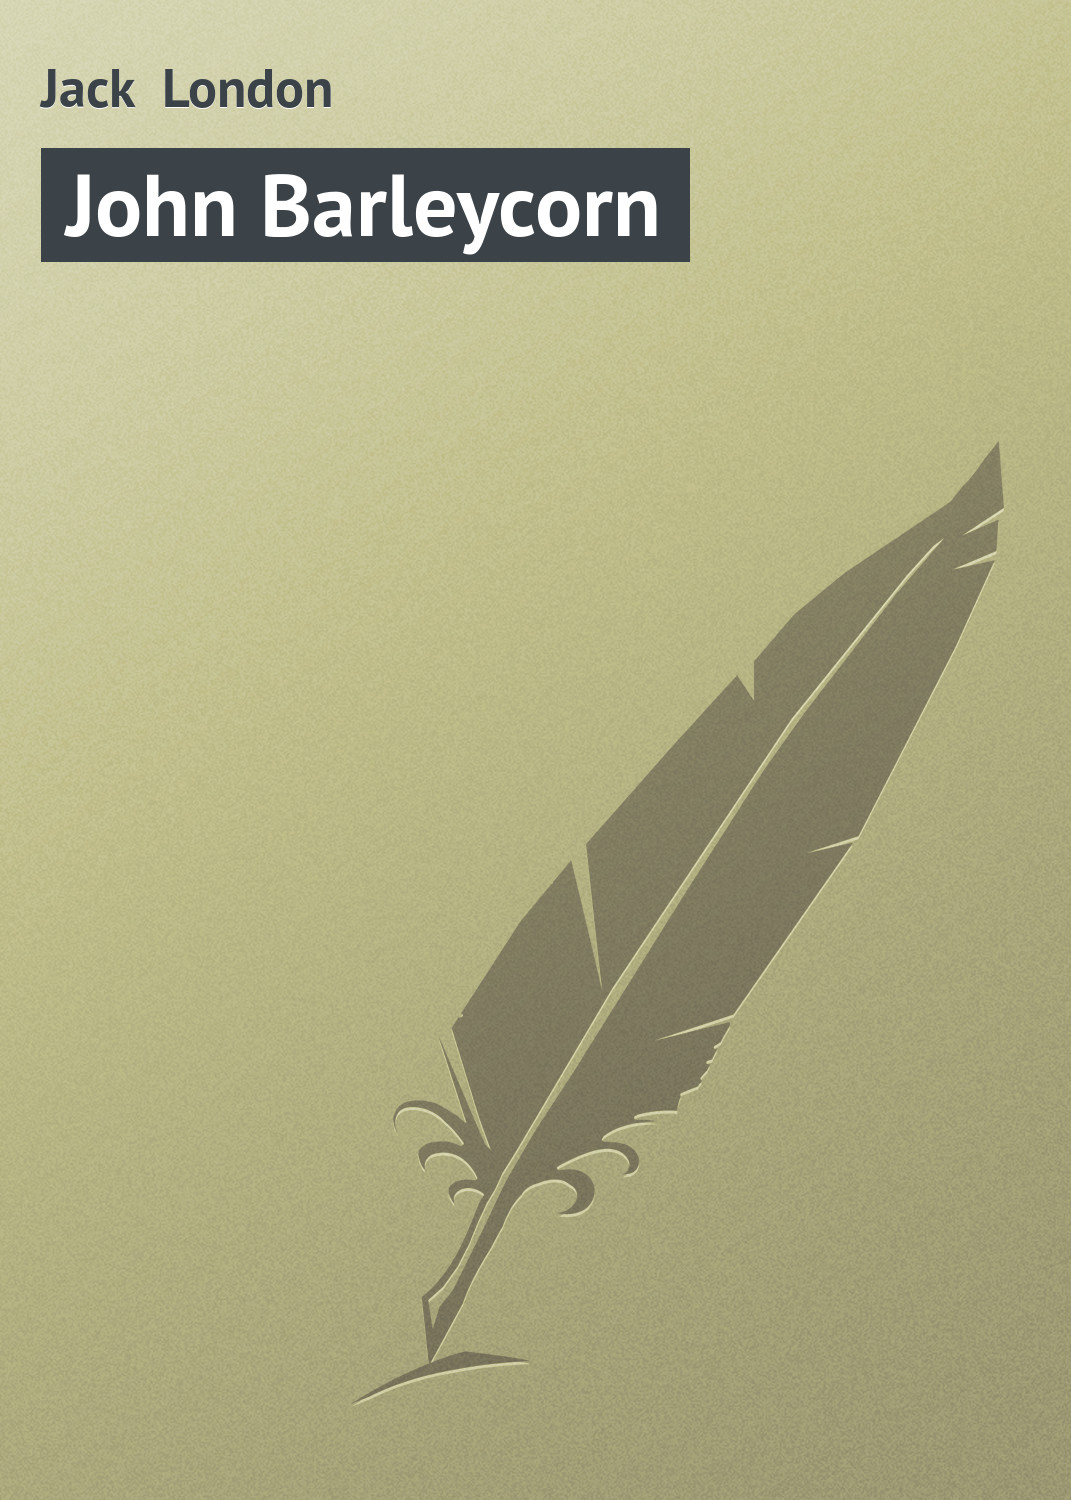 Книга John Barleycorn из серии , созданная Jack London, может относится к жанру Зарубежная старинная литература, Зарубежная классика. Стоимость электронной книги John Barleycorn с идентификатором 21103454 составляет 5.99 руб.